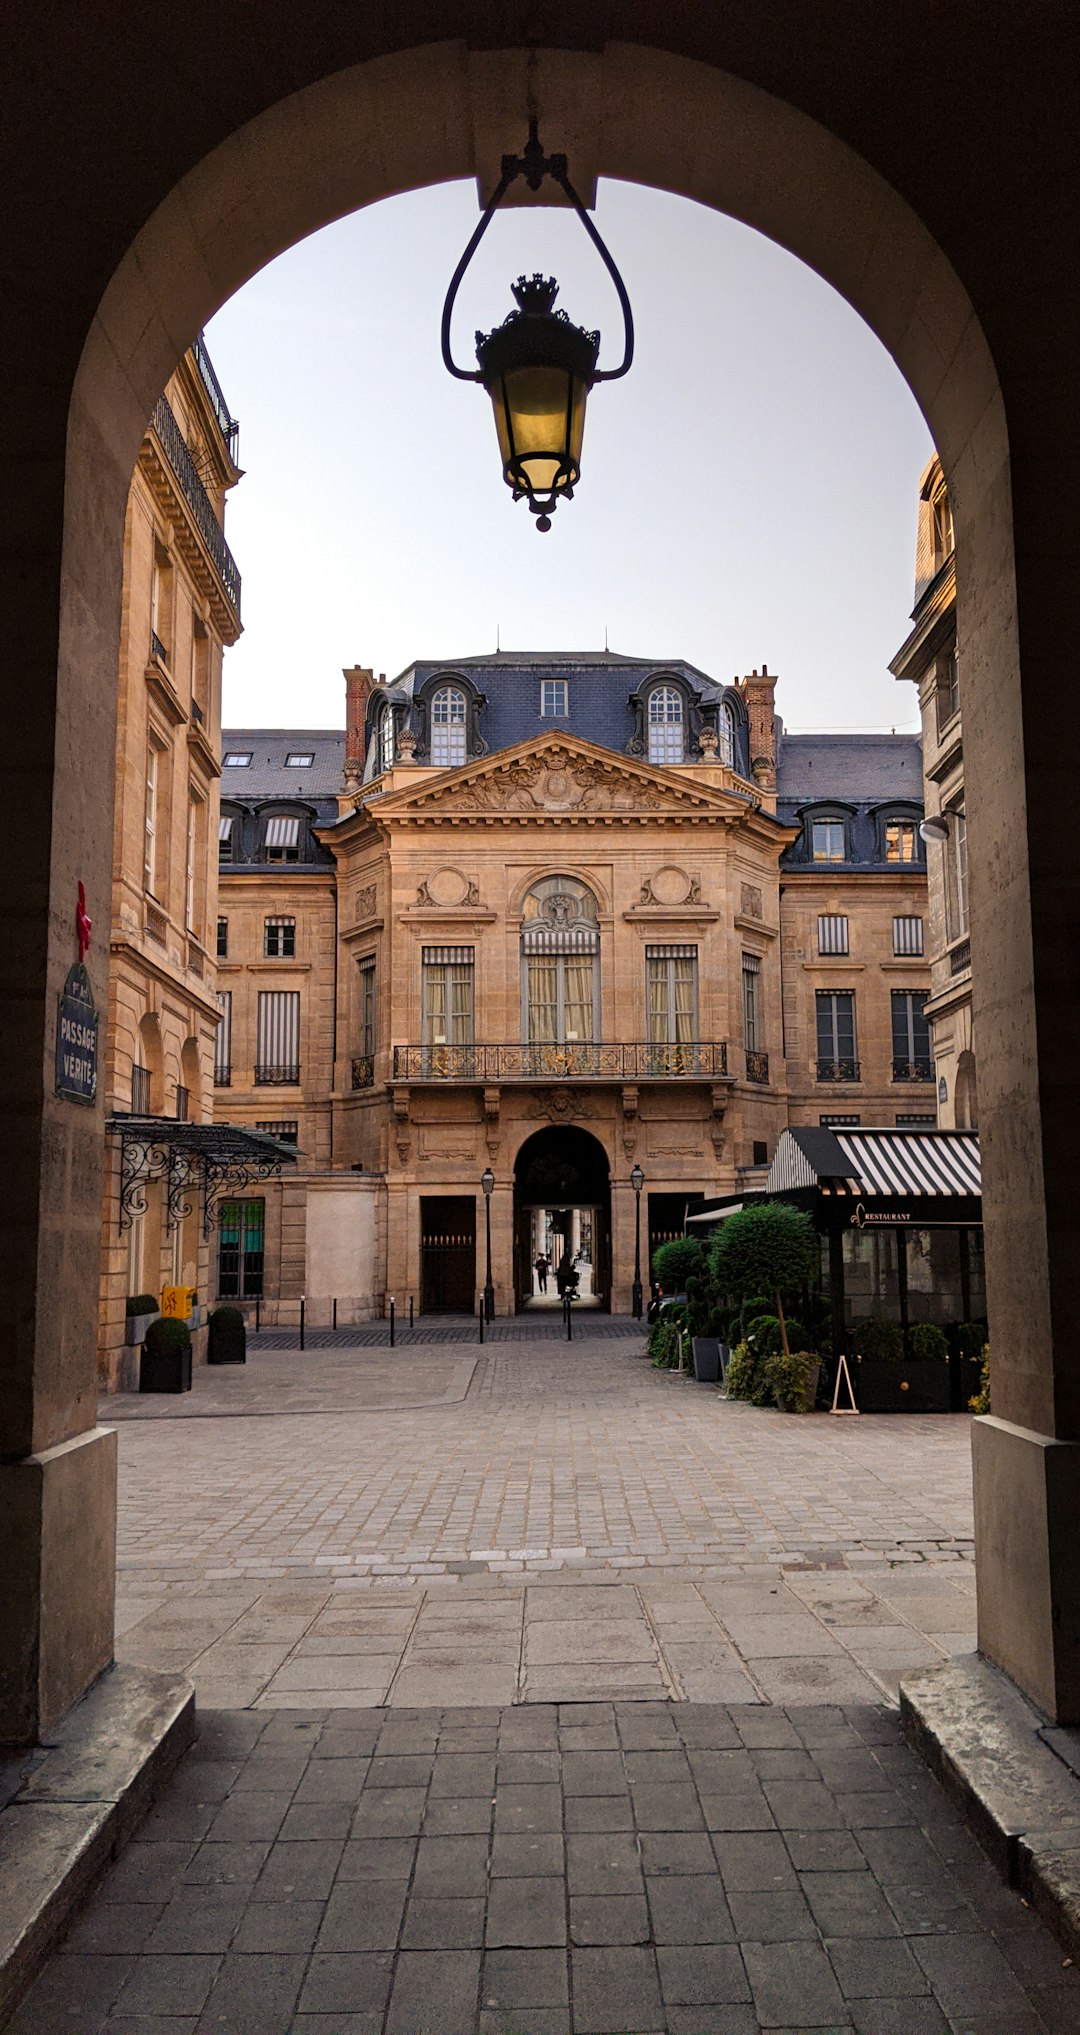 Town photo spot 1 Galerie des Proues Montparnasse